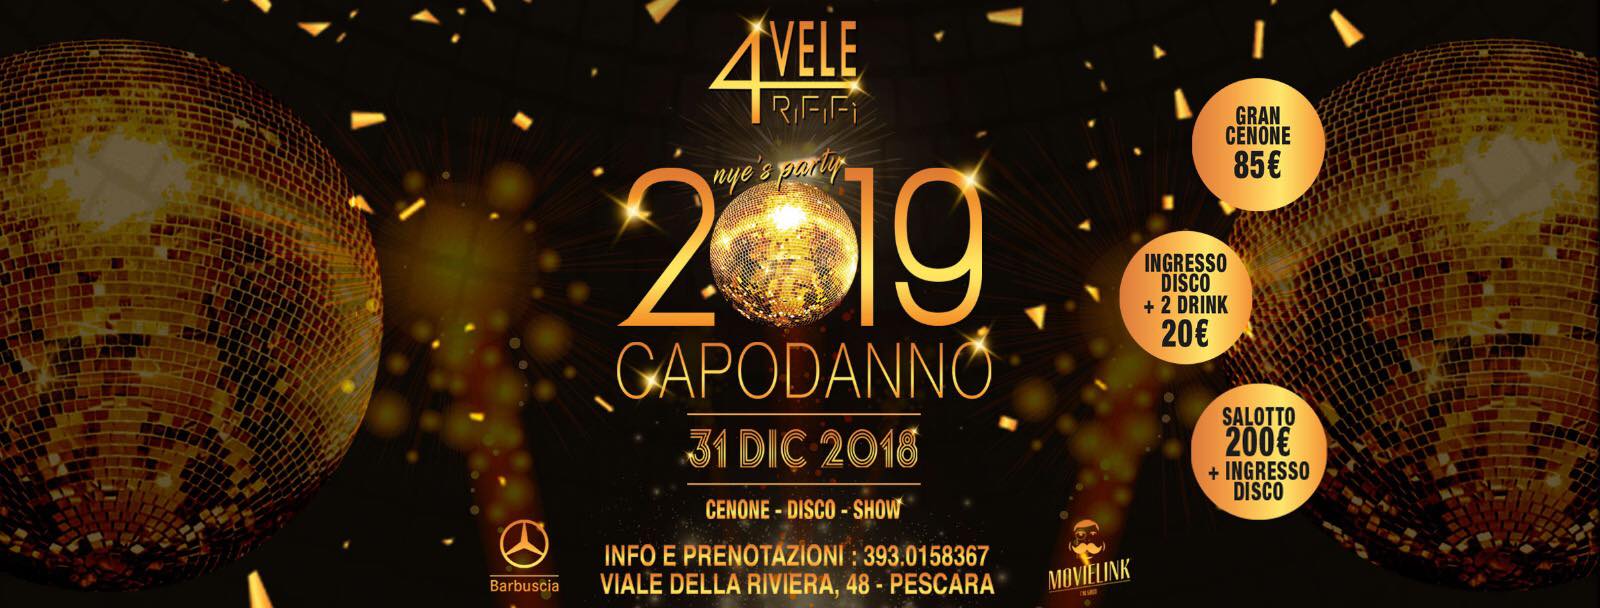 Il Capodanno 2019 del 4 Vele di Pescara